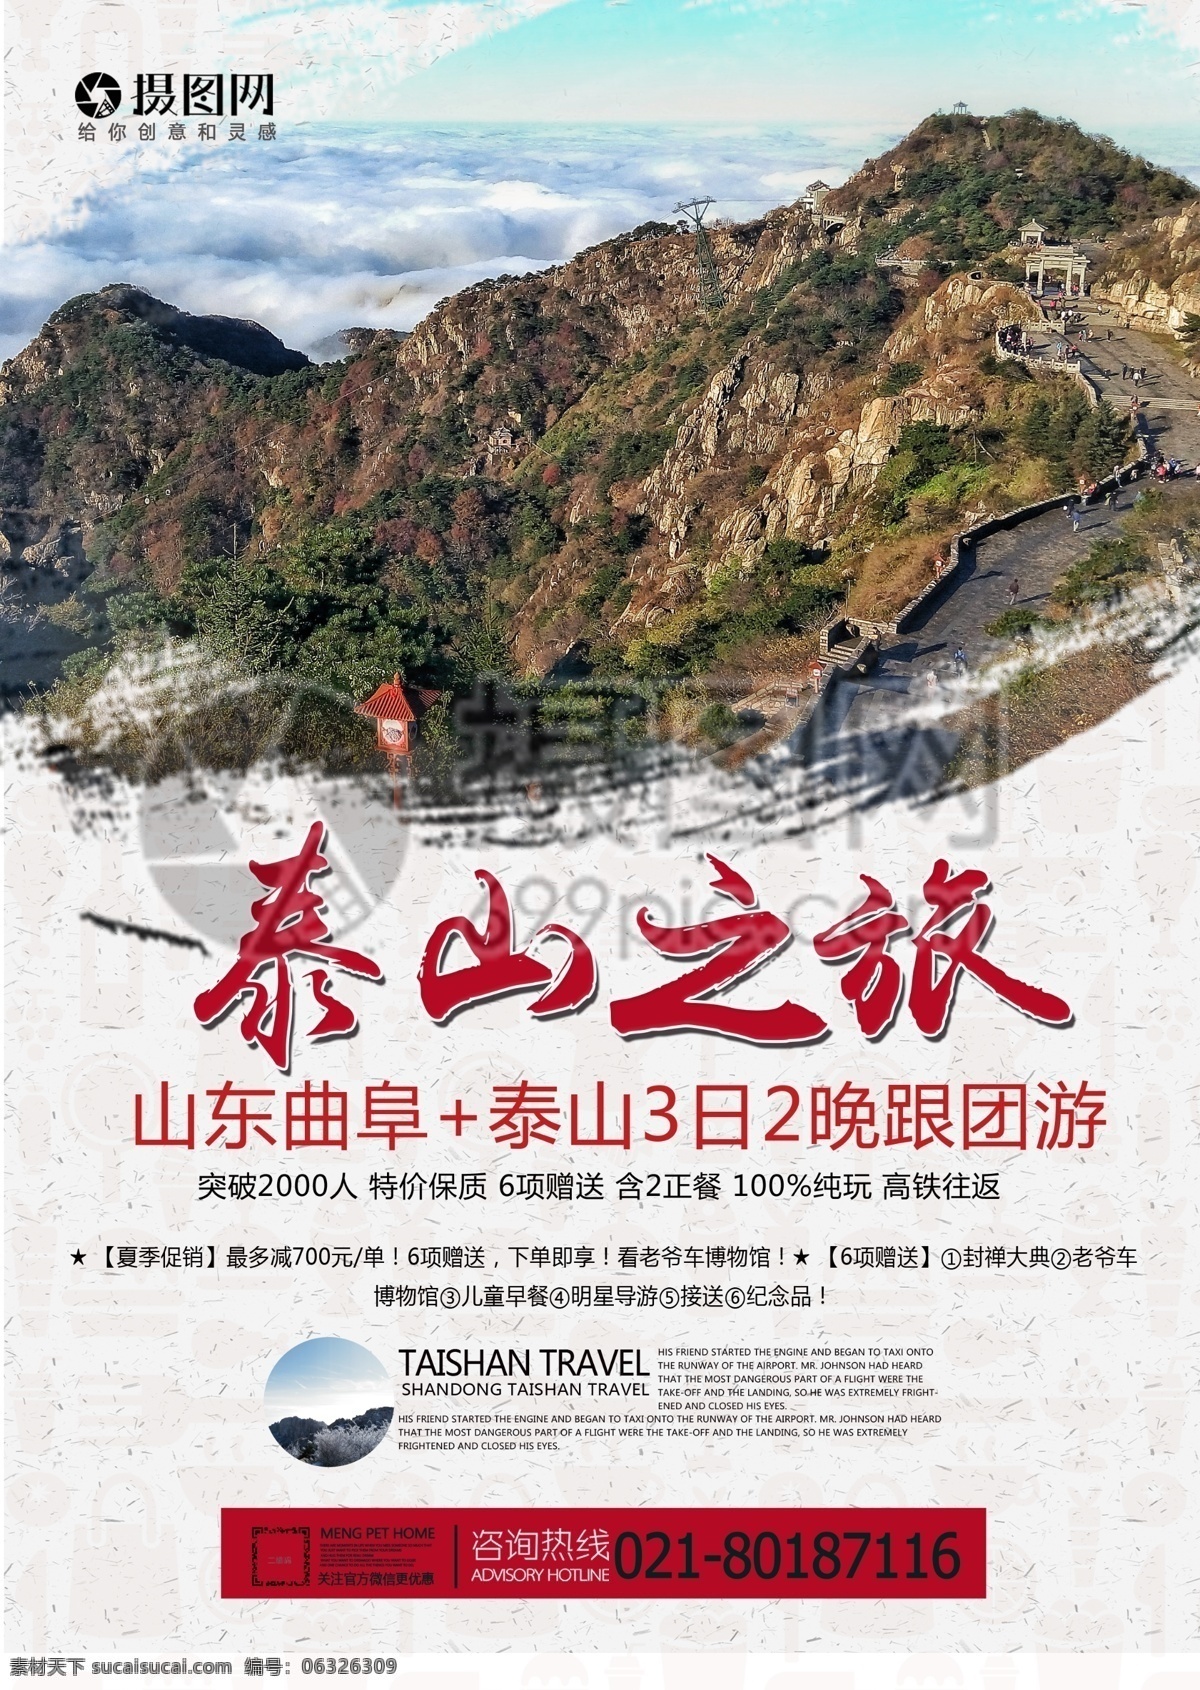 泰山旅游 宣传单 泰山 自然 风景 广阔 爬山 旅游 度假 旅游宣传 宣传单设计 假期 游玩